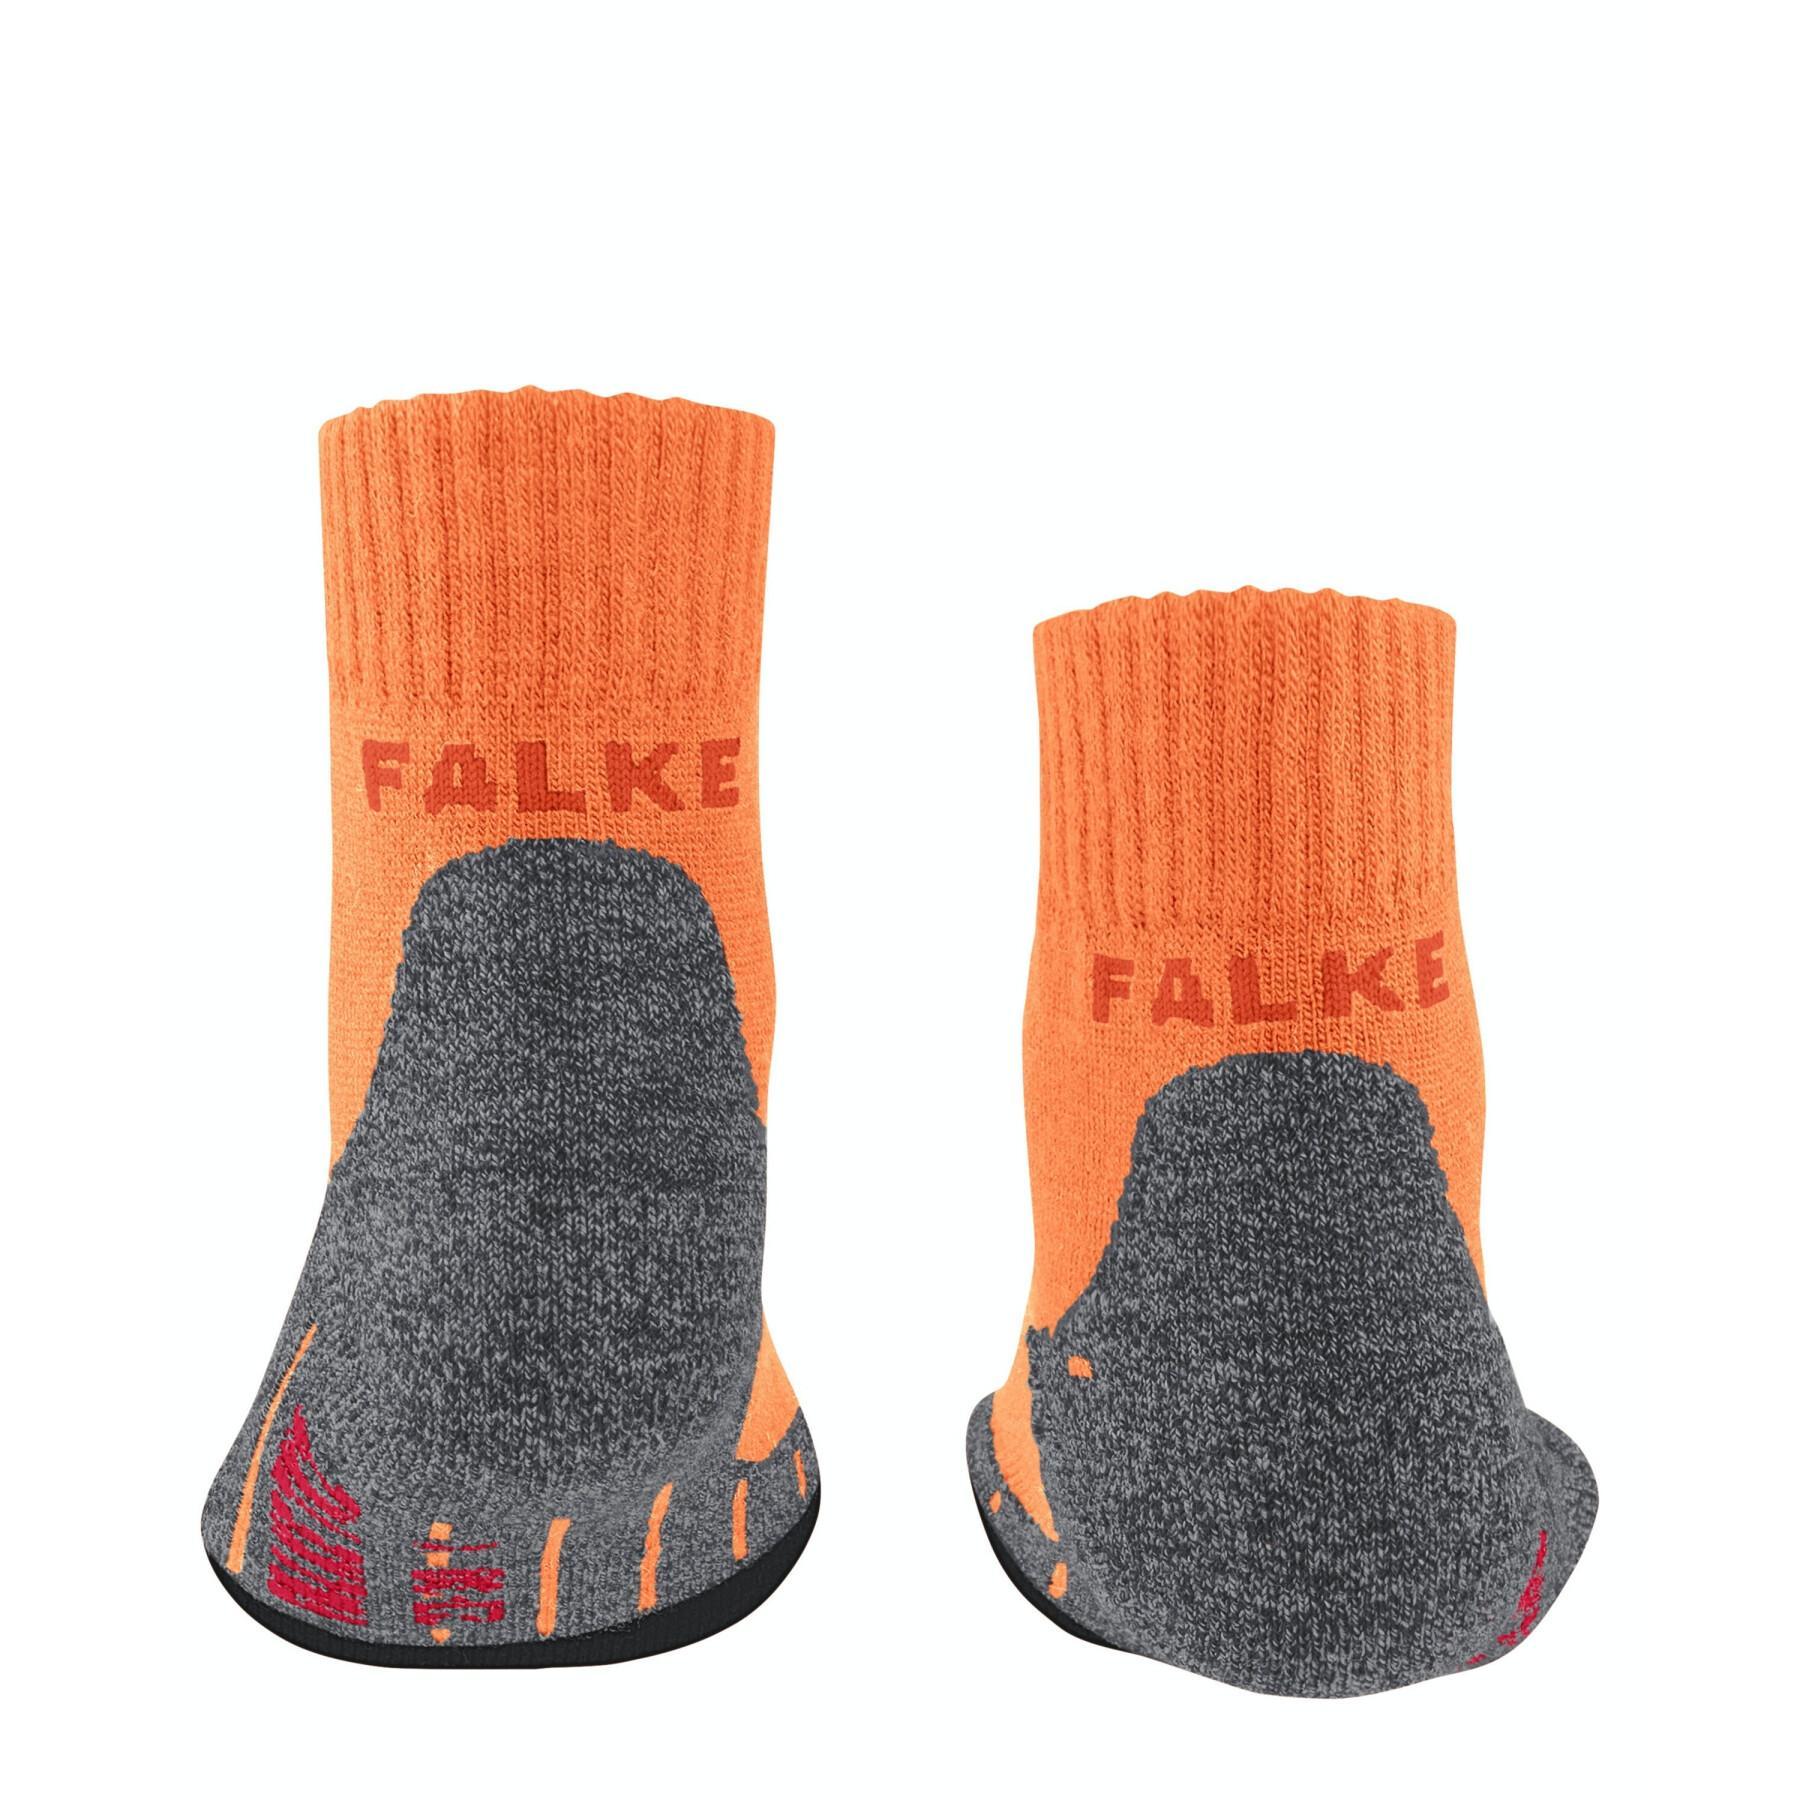 Baby short socks Falke TK2